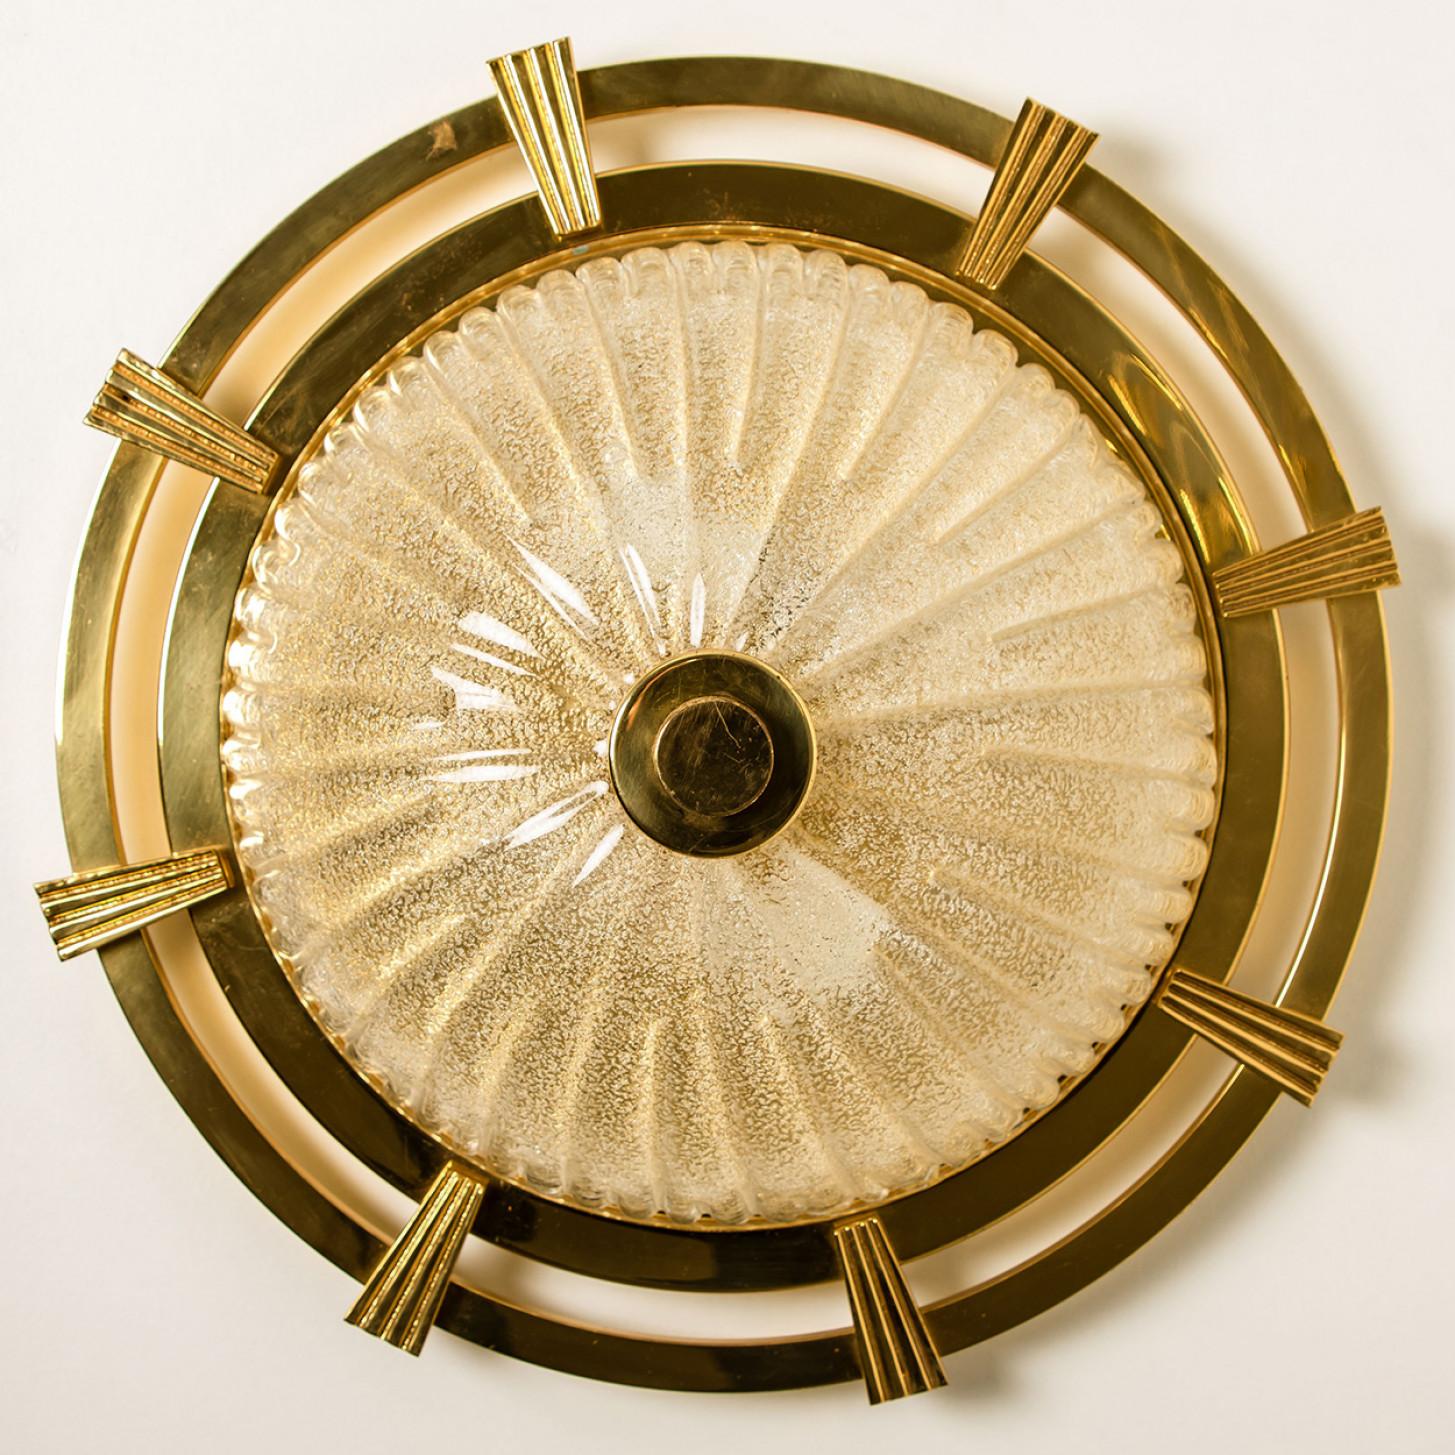 Eine wunderbare runde goldene Unterputzdose, ca. 1970, hergestellt von Glashütte Limburg, Deutschland.
Mit mundgeblasenem, strukturiertem Glas auf einem goldenen Sockel und einer sonnenähnlichen Struktur in Gold. Leuchtet wunderschön.
Kann entweder